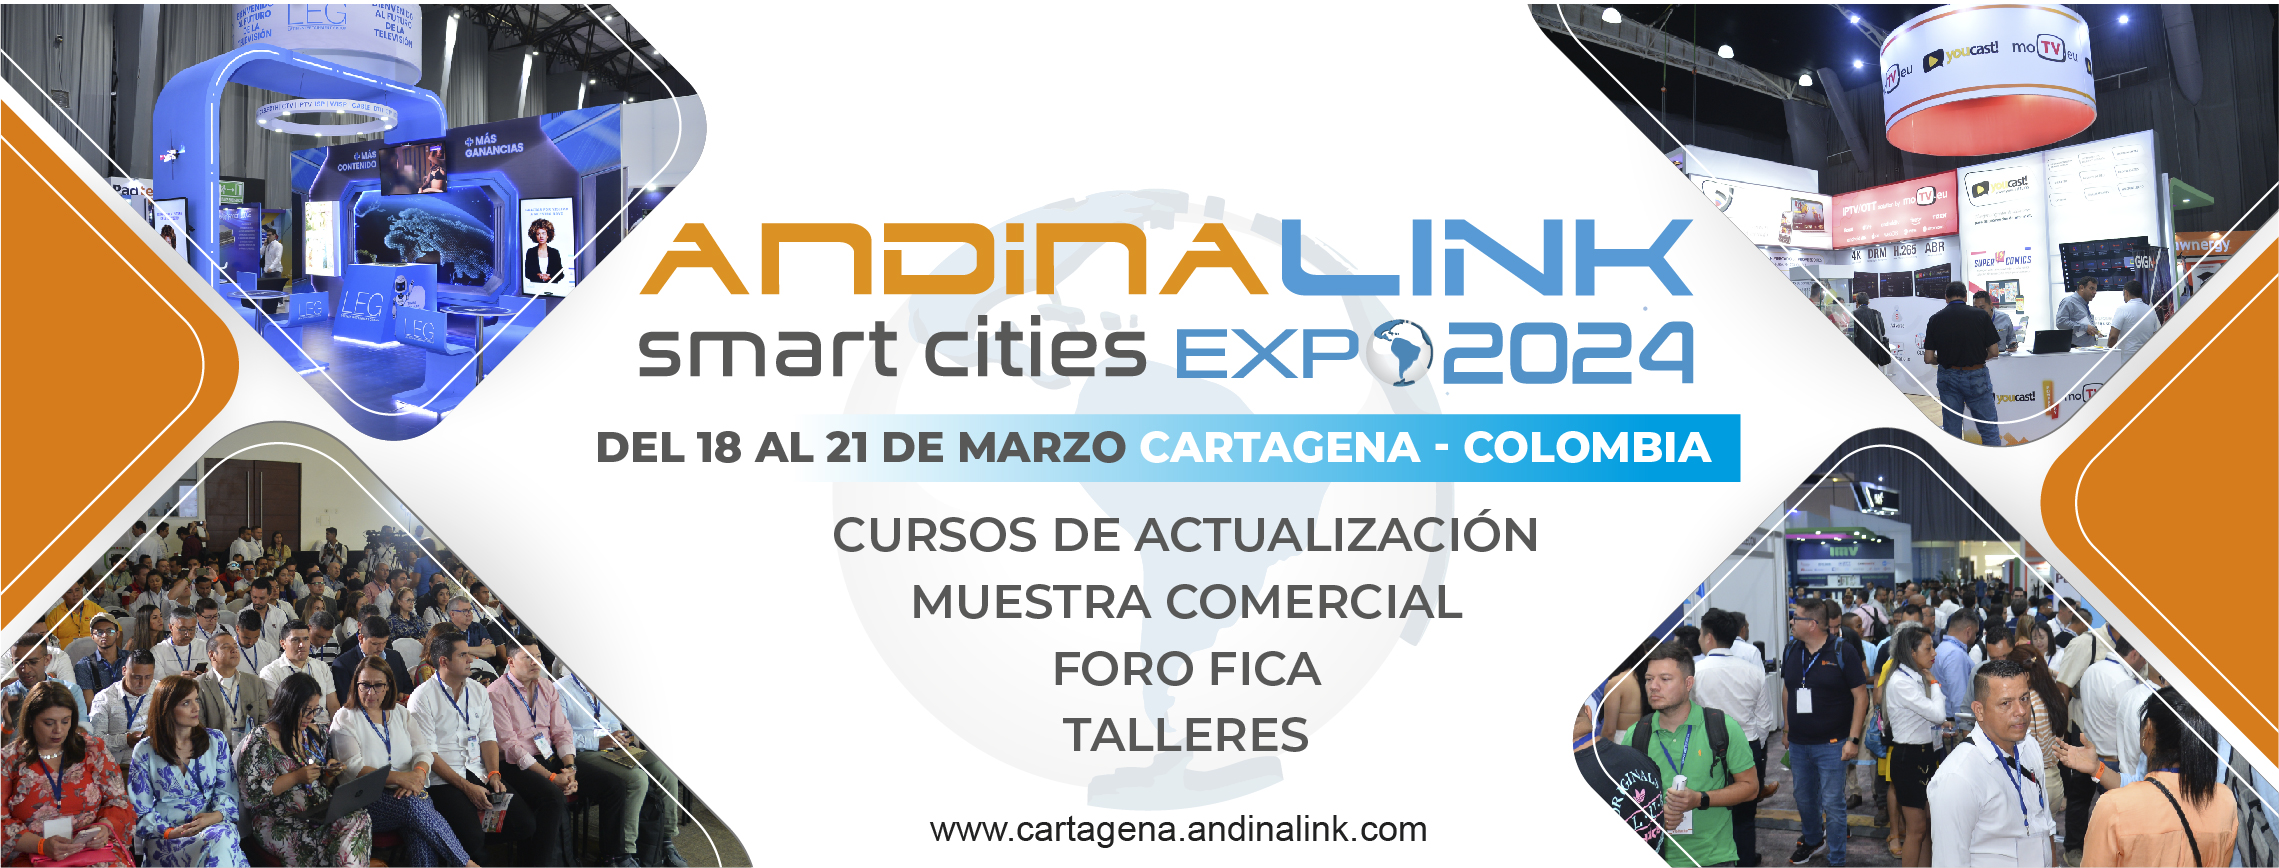 Andina Link Cartagena 2024